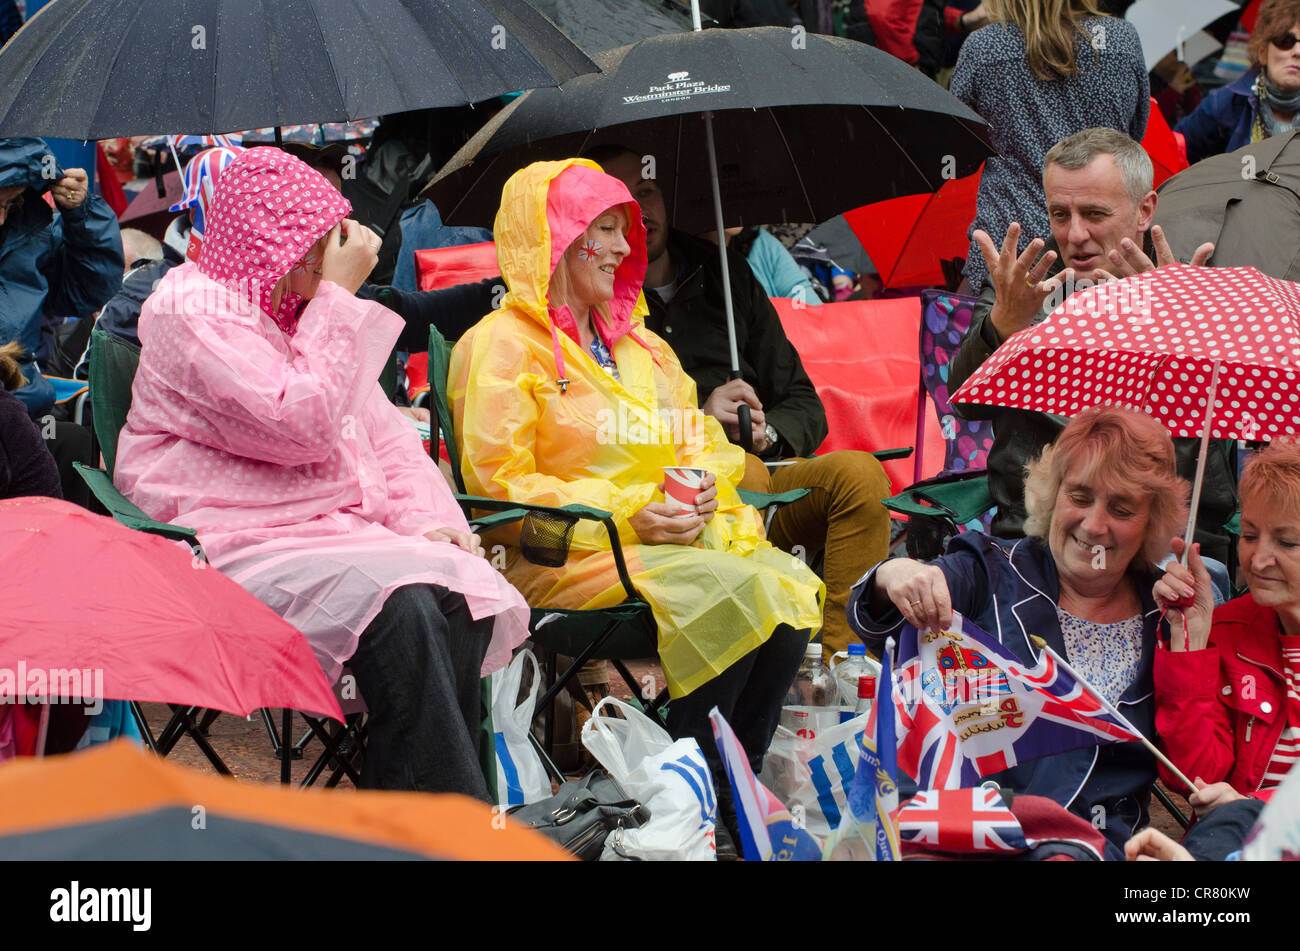 La lluvia empapó juerguistas en el Queen's Diamond Jubilee esperando concierto pop en el Mall. Paraguas y ropa impermeable. Foto de stock